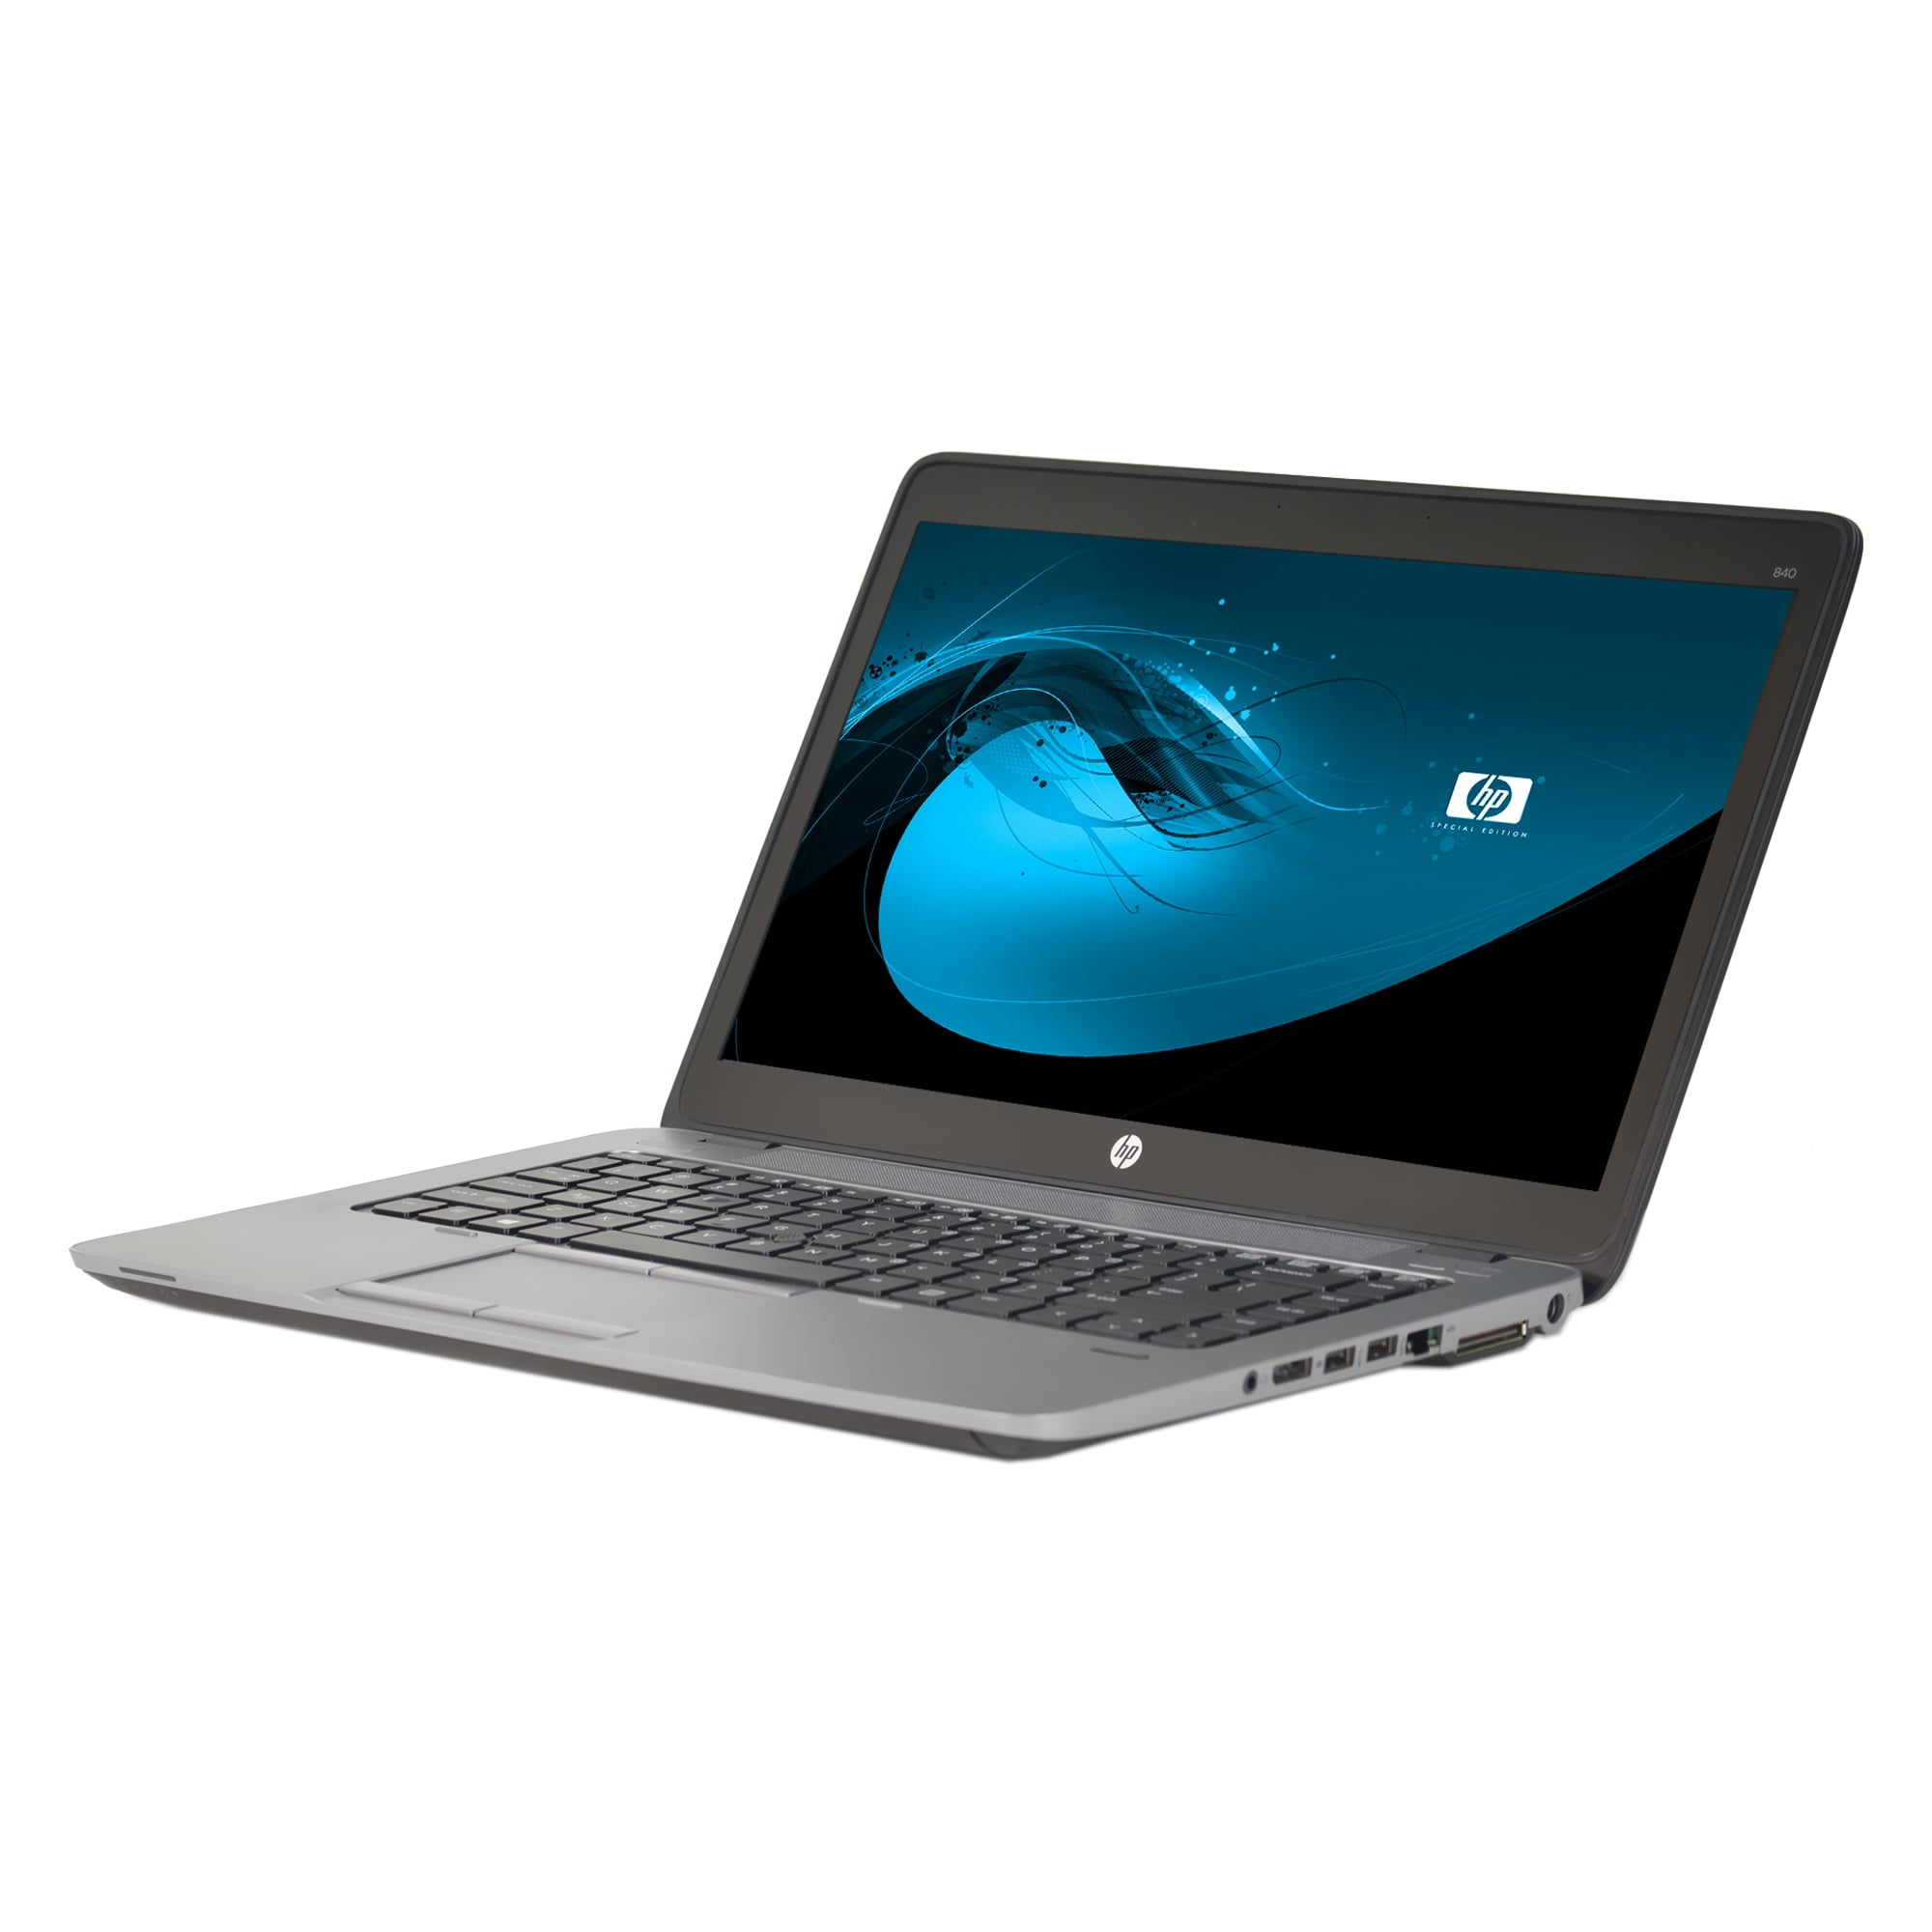 omverwerping token oneerlijk B GRADE Used HP 14" 840 G1 Laptop with Intel Core i5-4200U 1.6GHz, 4GB RAM,  320GB HDD, and Win 10 Home (64-bit) - Walmart.com